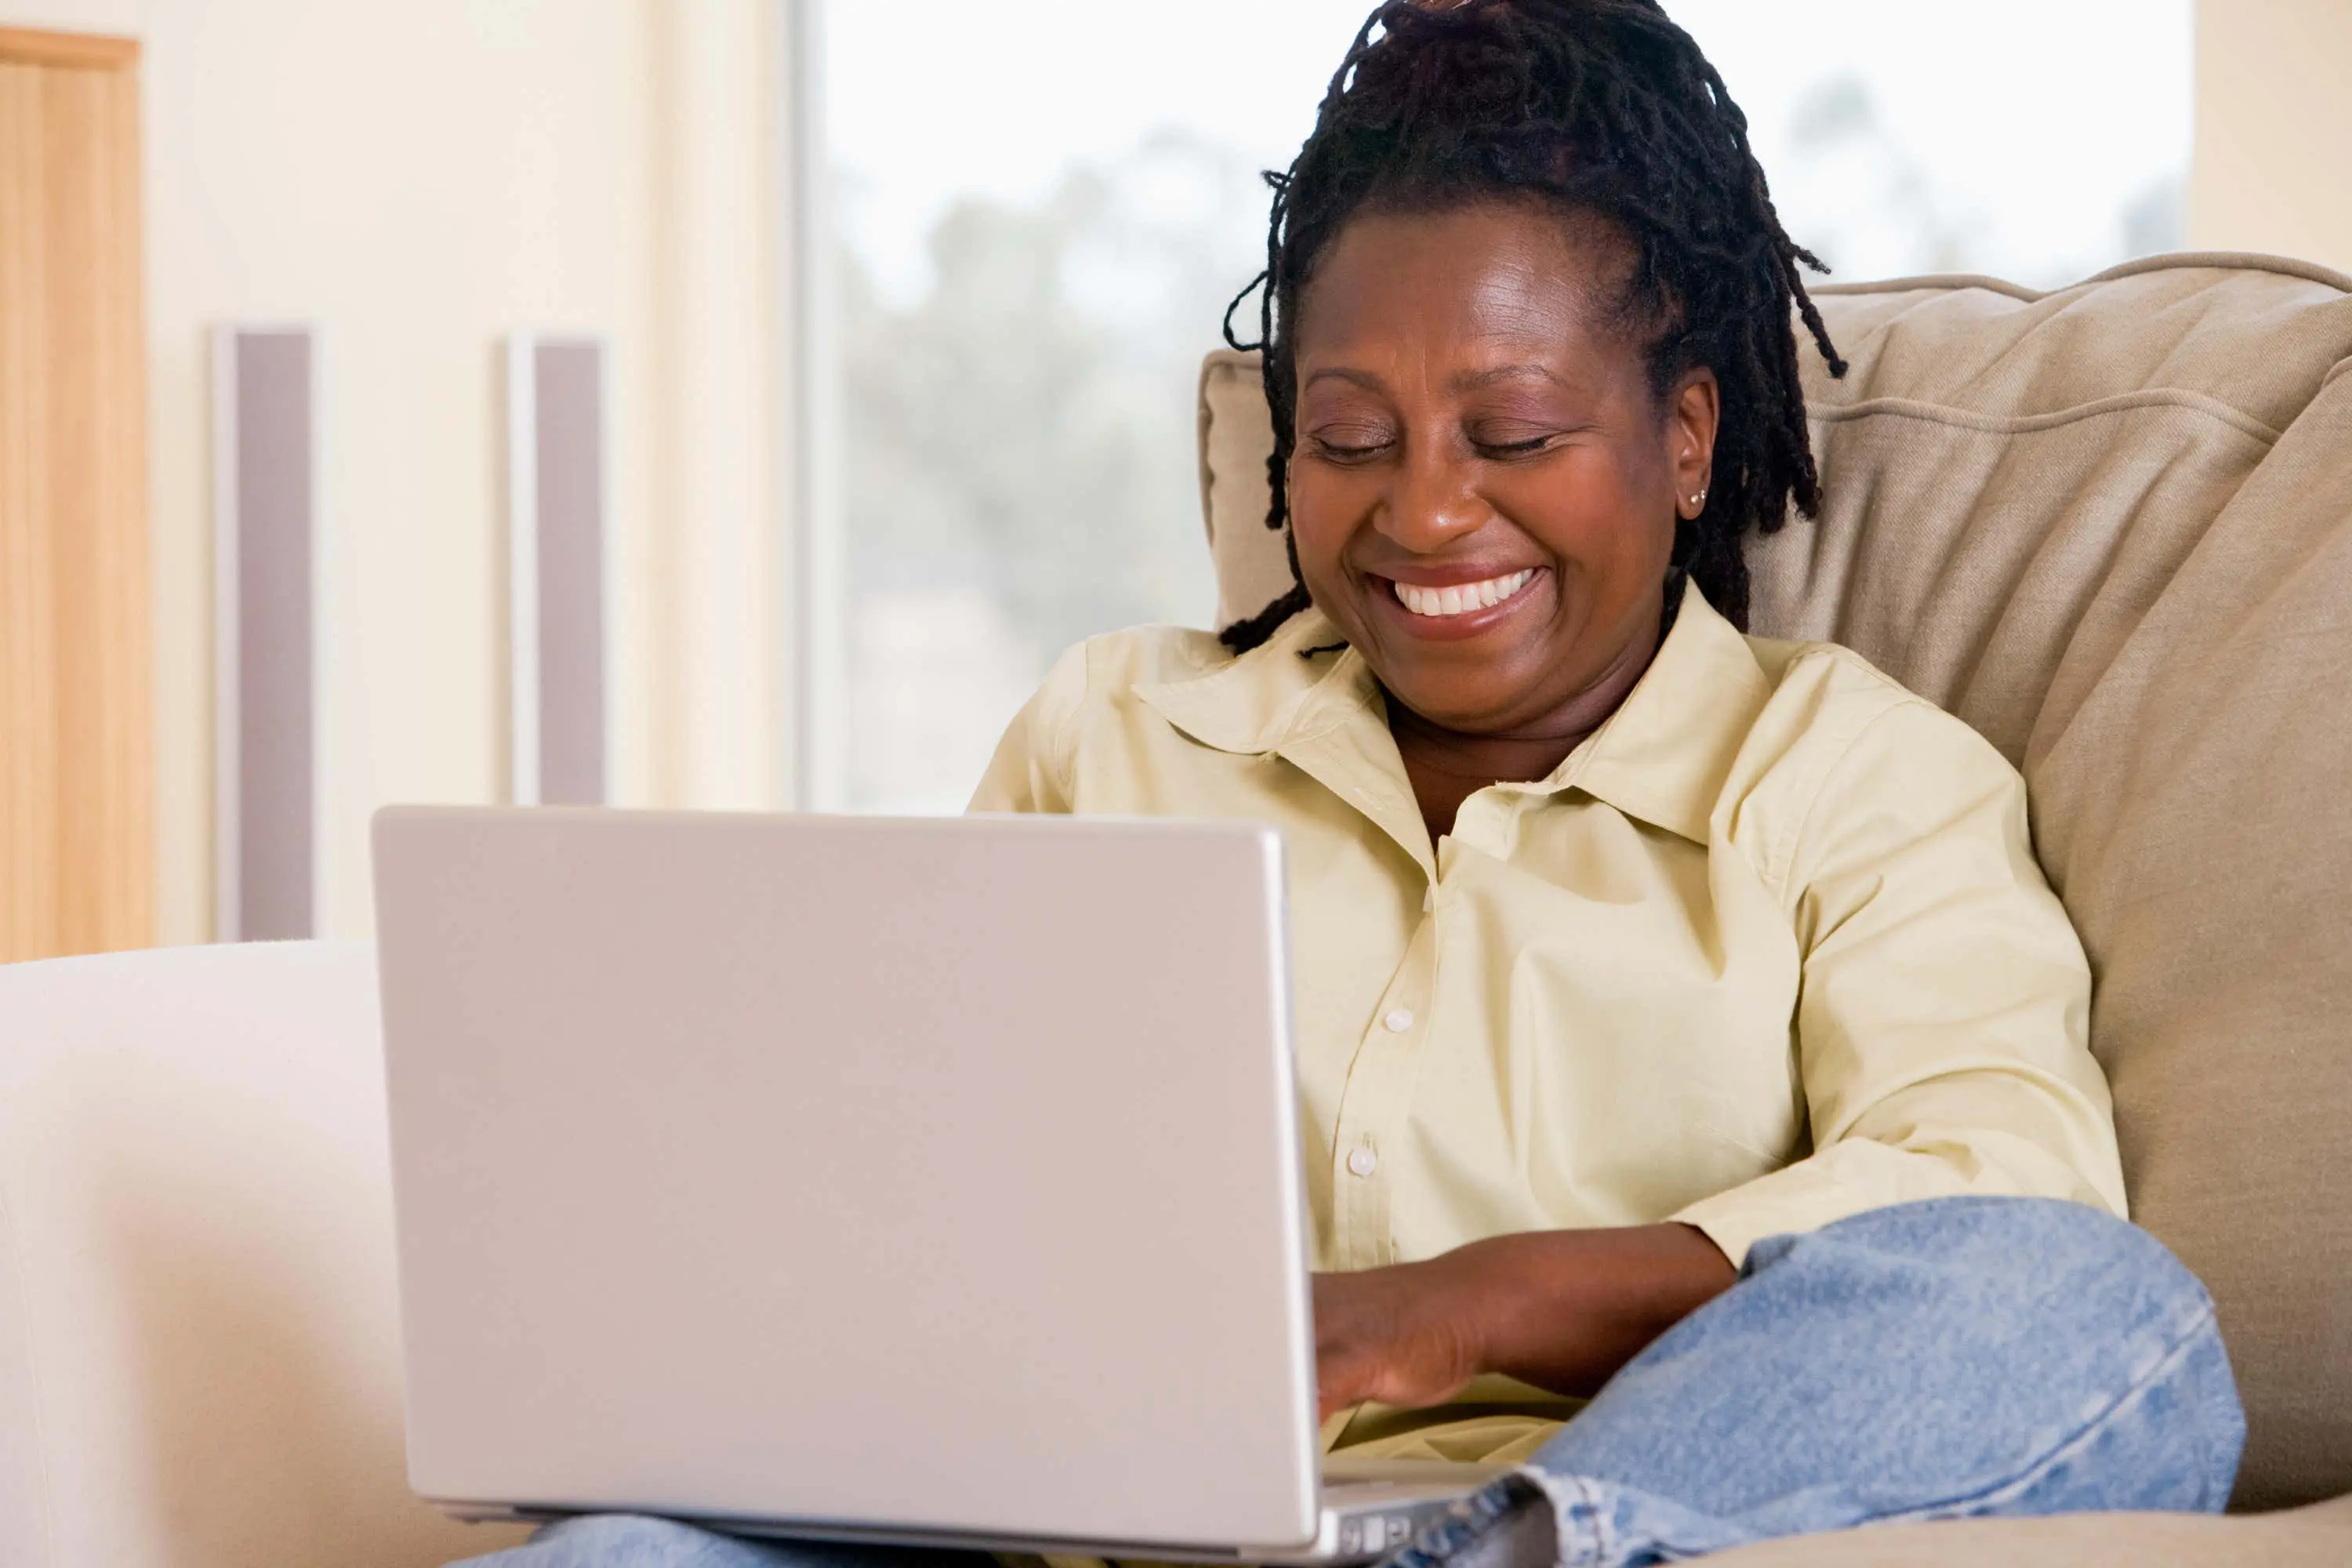 Woman smiles on laptop